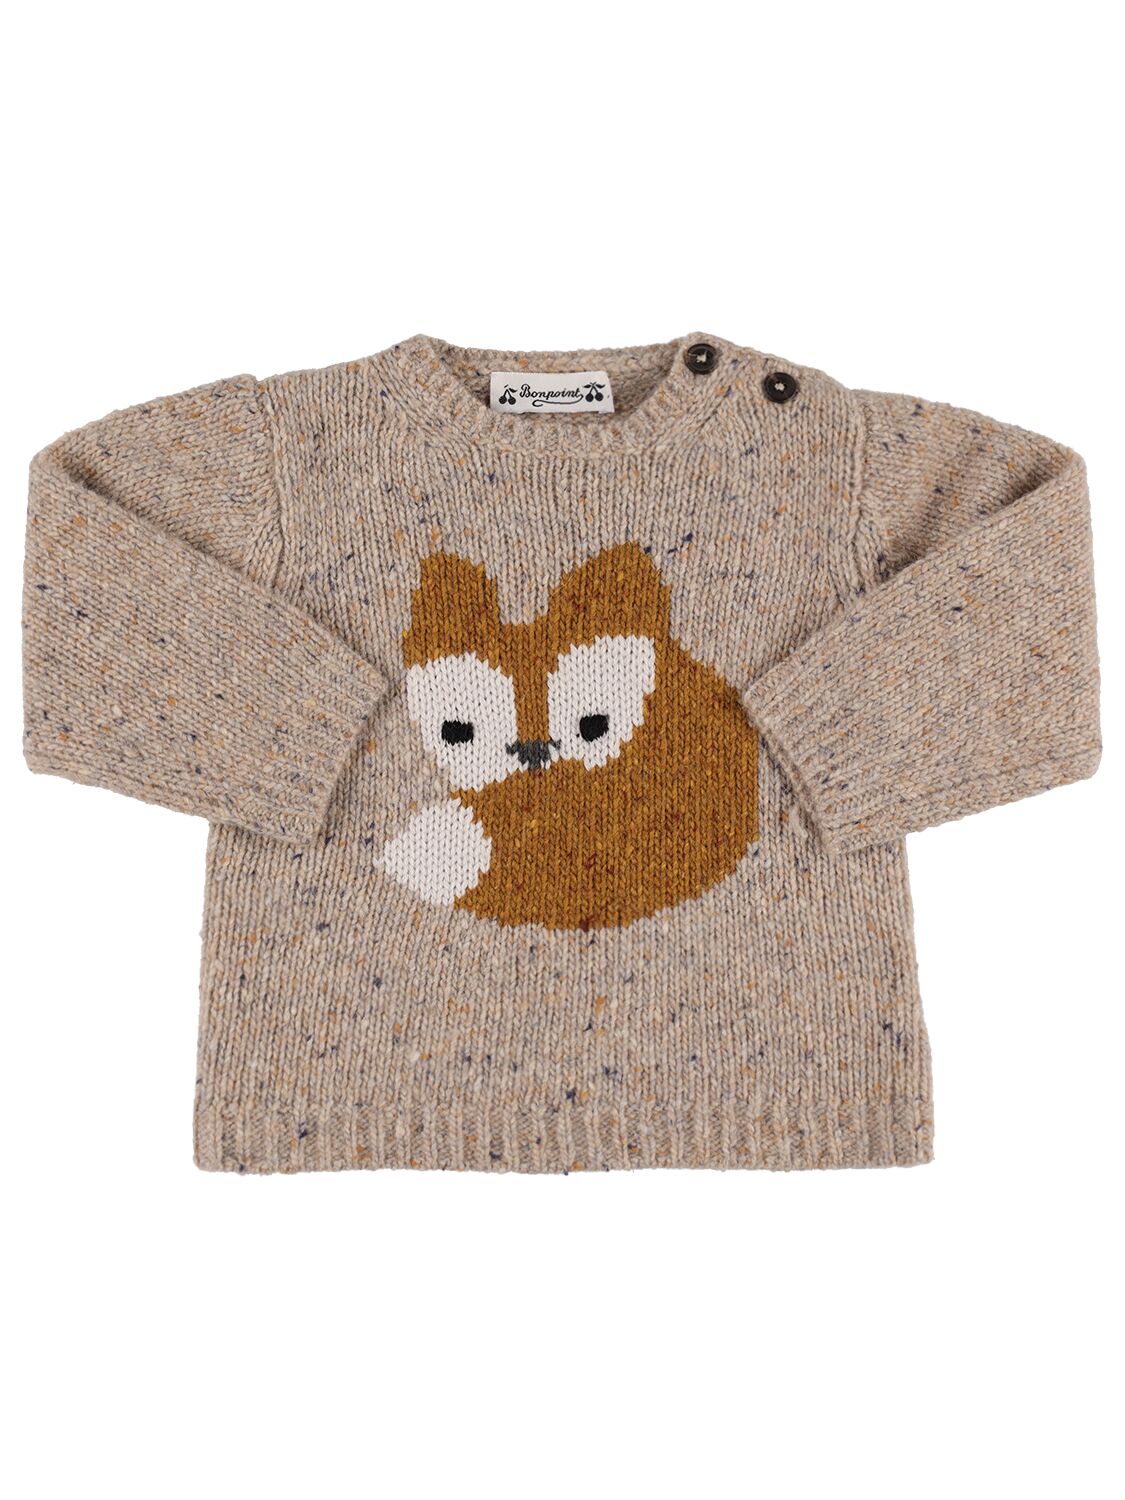 Blumaro Wool Blend Sweater – KIDS-BOYS > CLOTHING > KNITWEAR